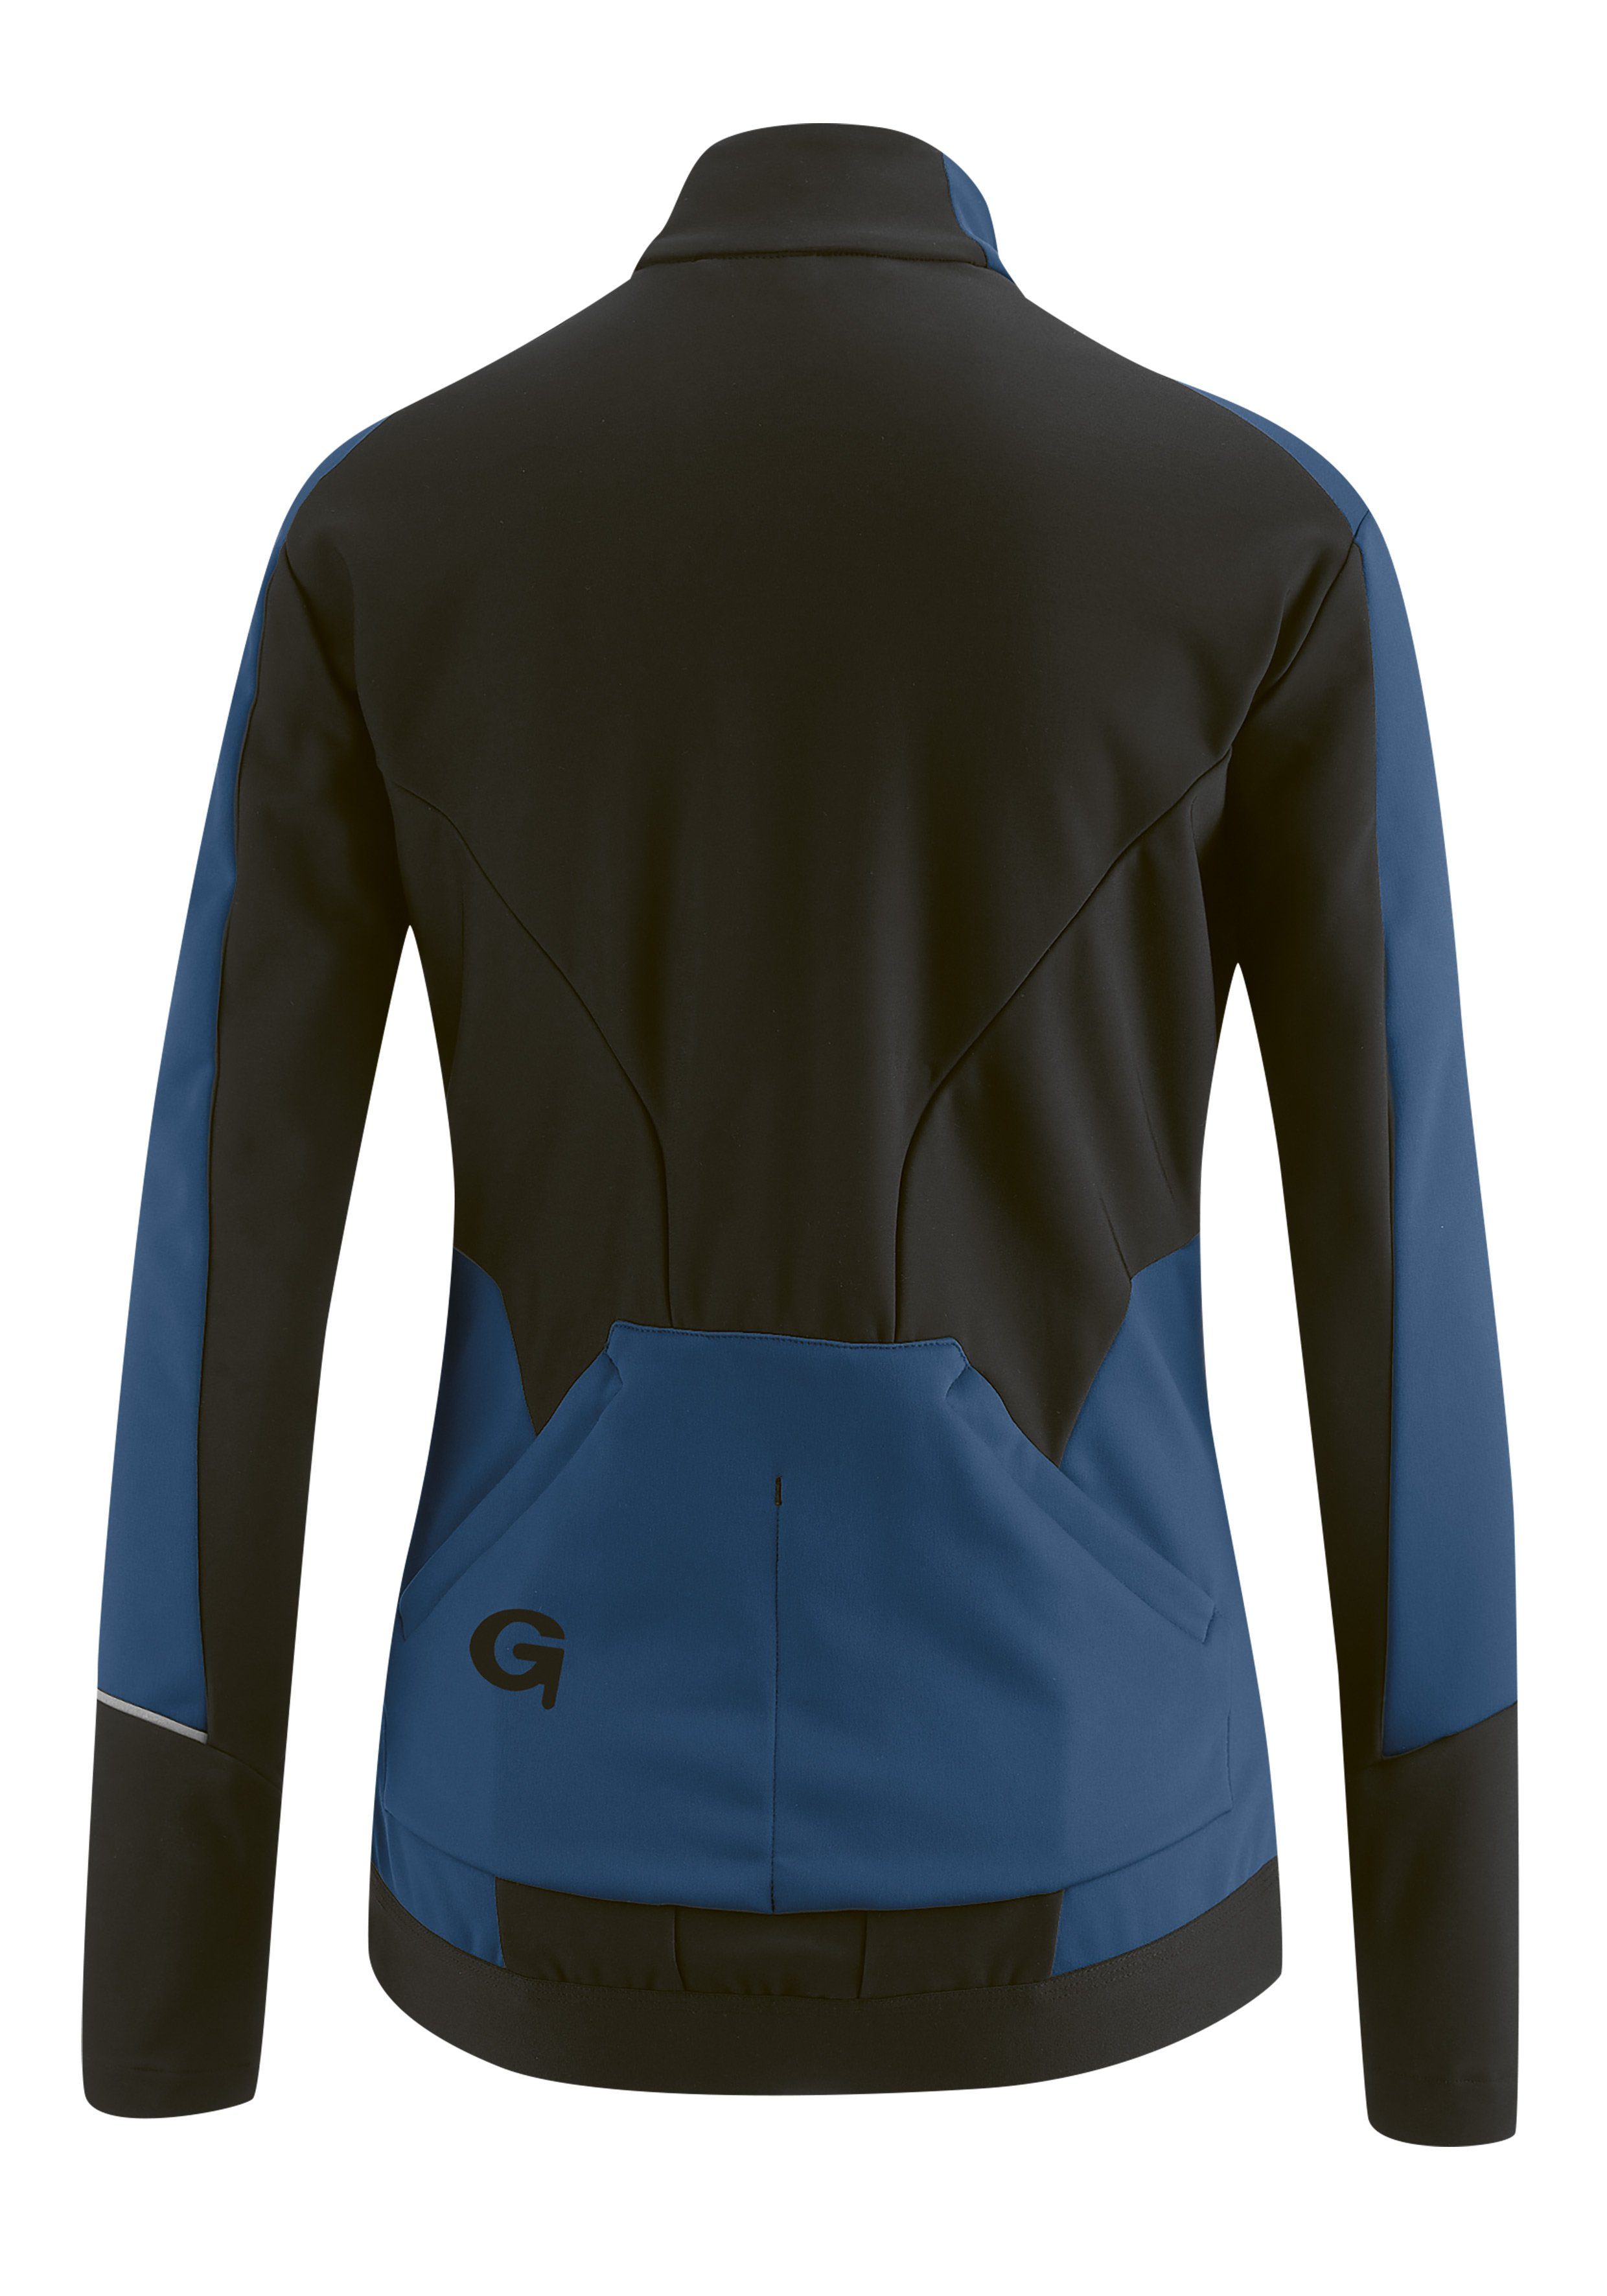 Fahrradjacke Damen und FURIANI atmungsaktiv Gonso wasserabweisend Softshell-Jacke, Windjacke dunkelblau